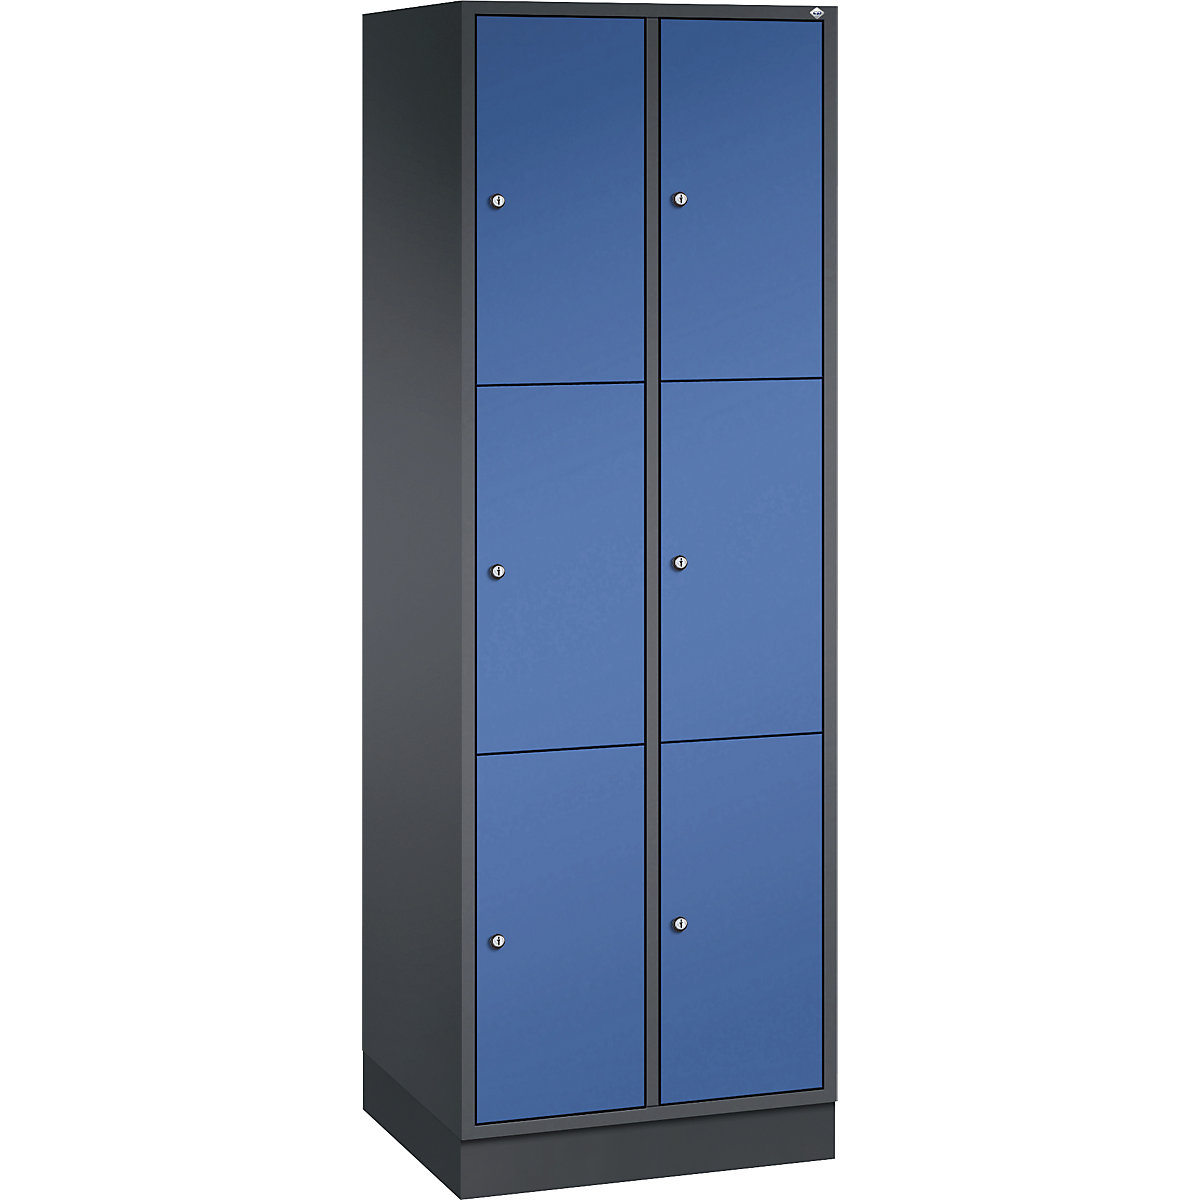 INTRO oceľová skriňa s uzamykateľnými priehradkami, výška priehradky 580 mm – C+P, š x h 620 x 500 mm, 6 priehradiek, korpus čiernošedá, dvere enciánová modrá